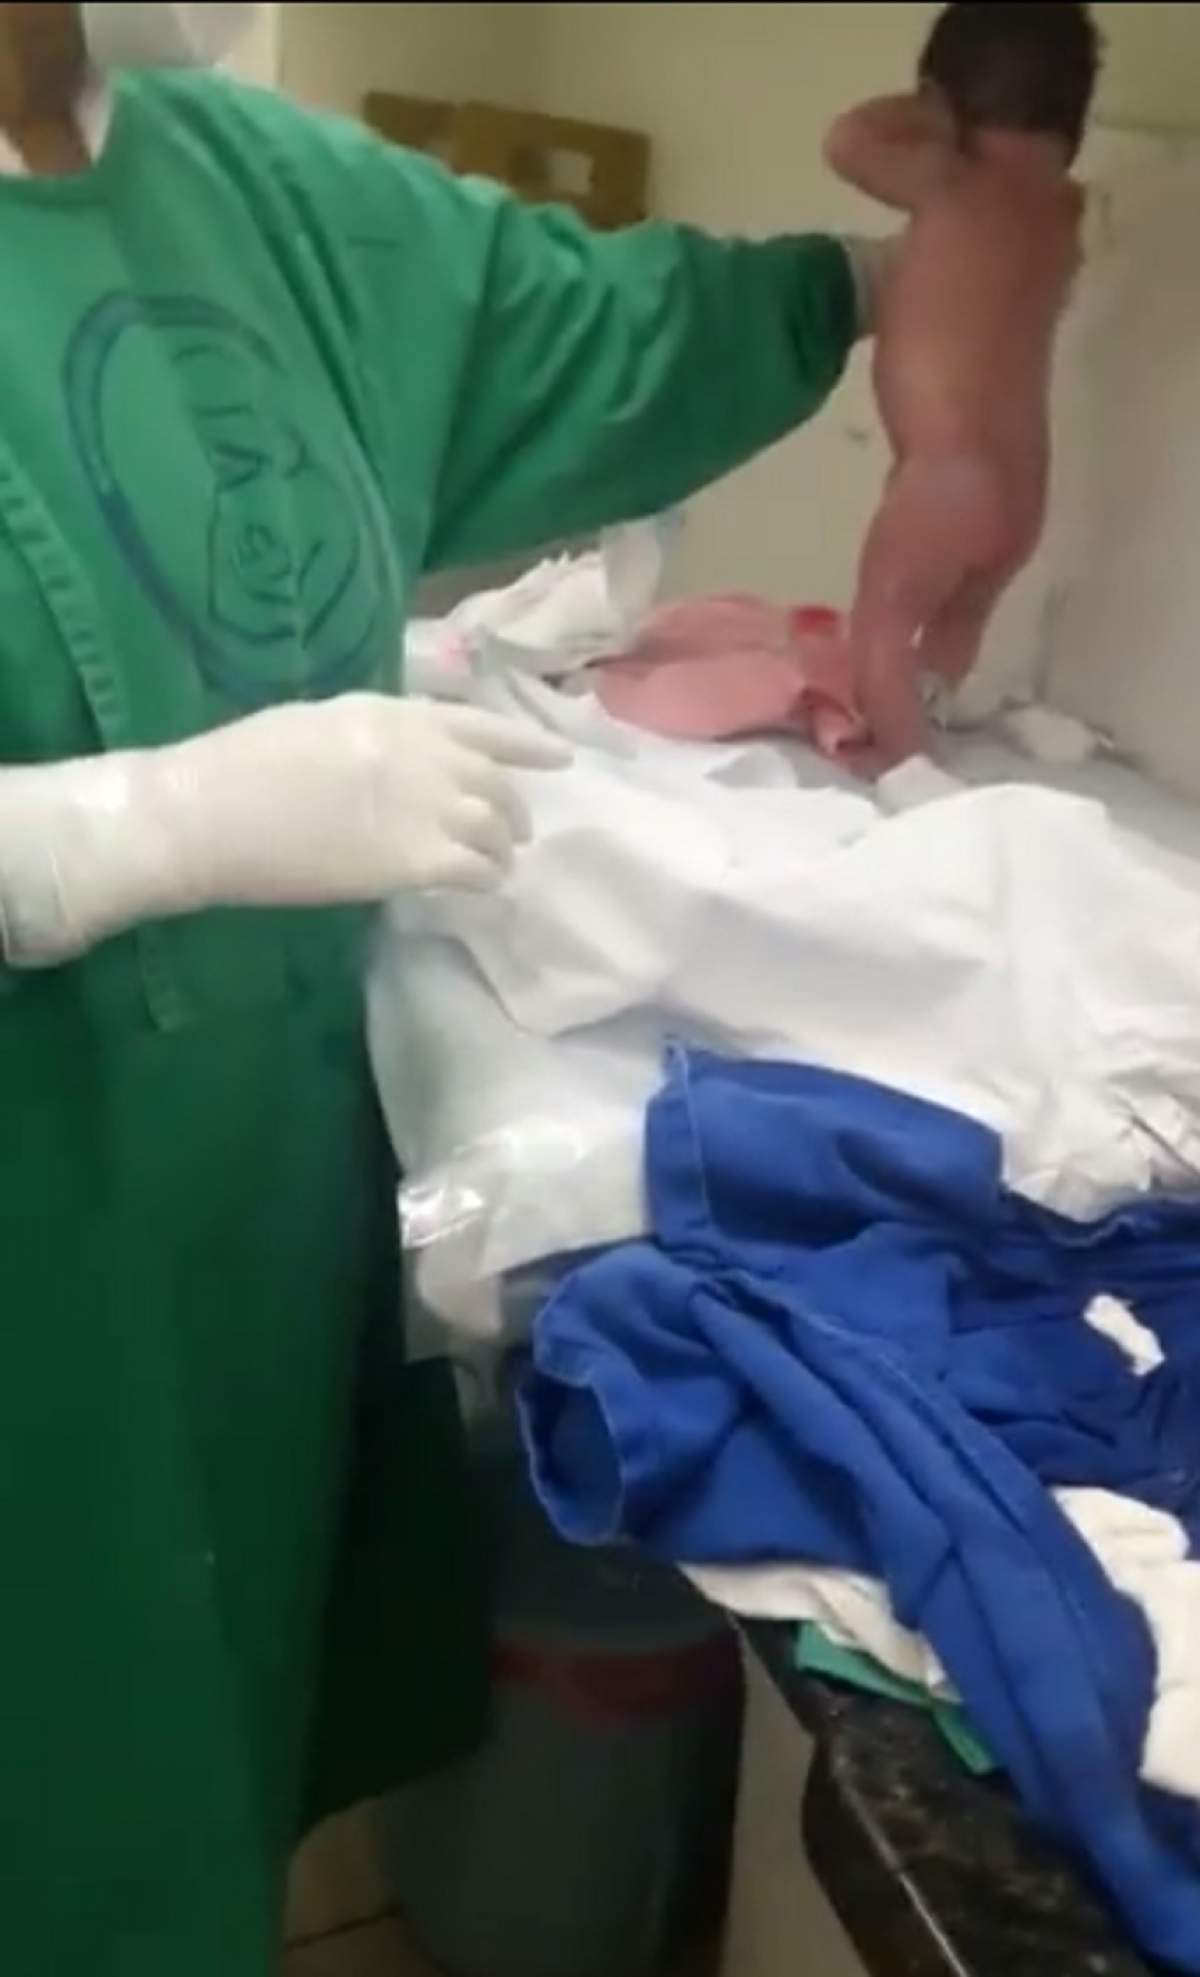 VIDEO / Caz incredibil! La câteva minute după ce s-a născut, un bebeluş a început să meargă